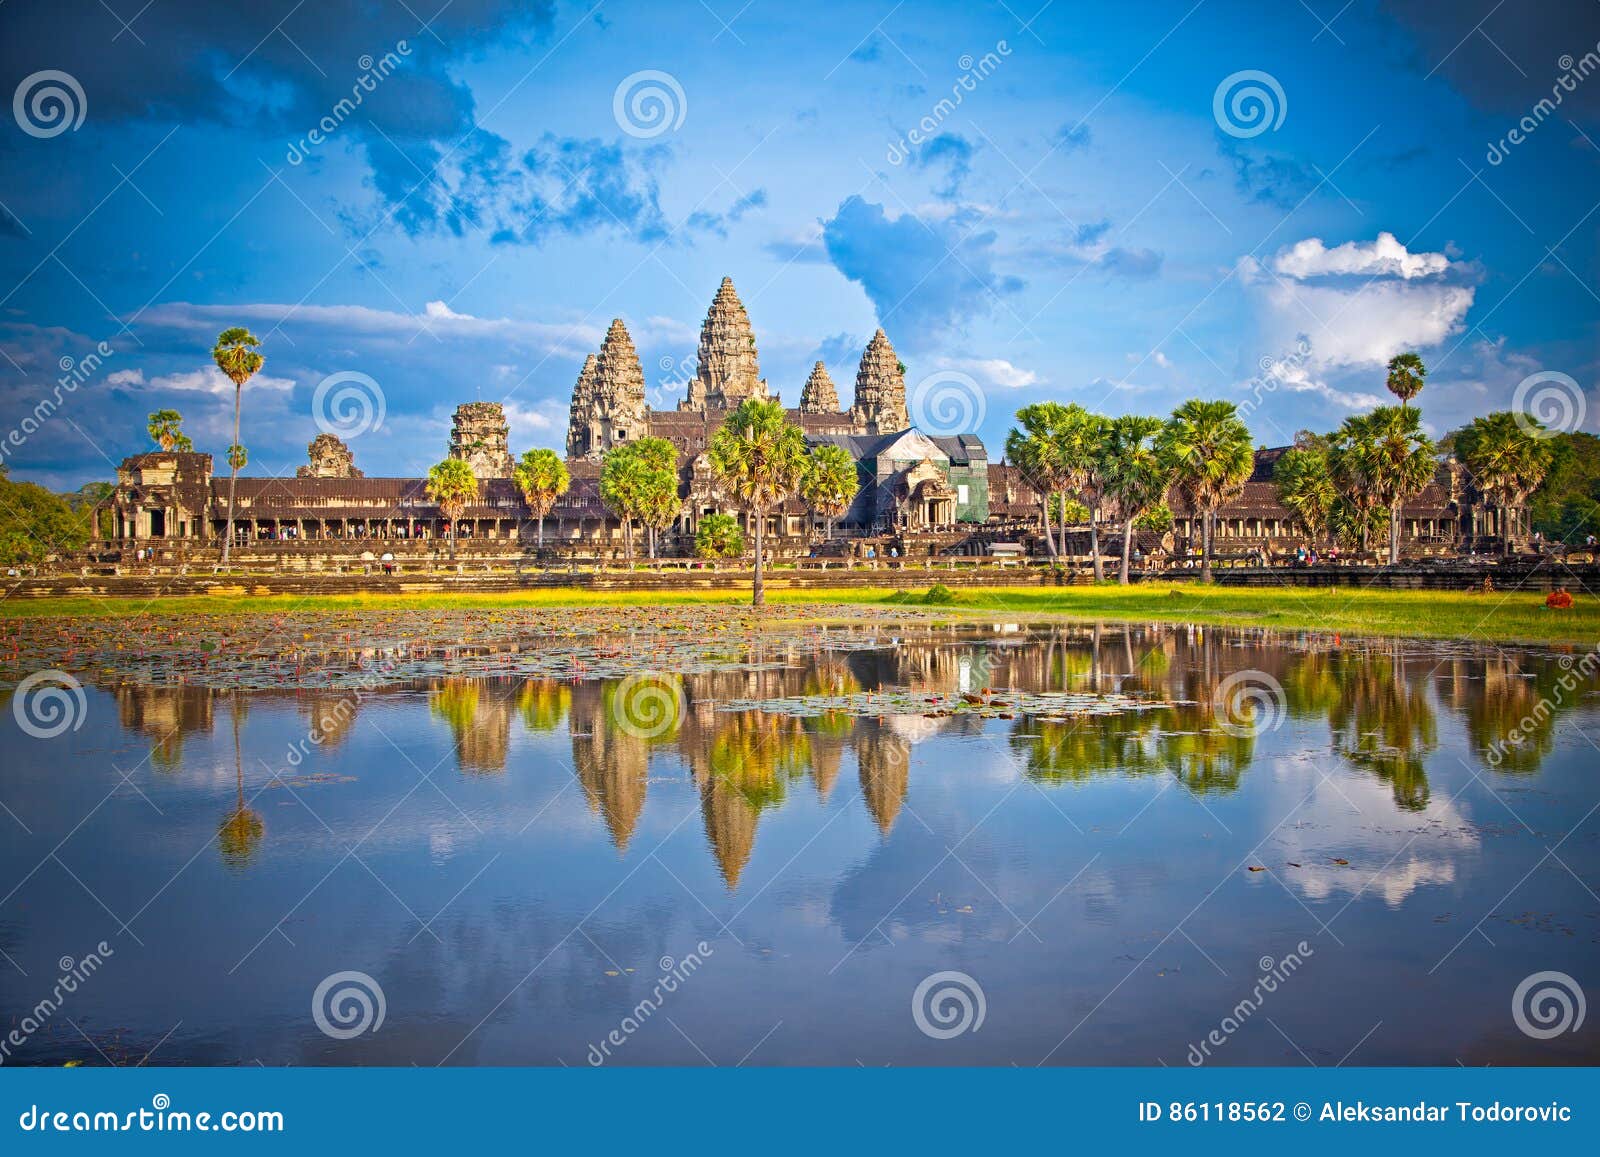 Διάσημος ναός Angkor Wat σύνθετος στο ηλιοβασίλεμα, Καμπότζη. Ο διάσημος ναός Angkor Wat σύνθετος στο ηλιοβασίλεμα, κοντά σε Siem συγκεντρώνει, Καμπότζη περιοχή Μόσχα μια πανοραμική όψη